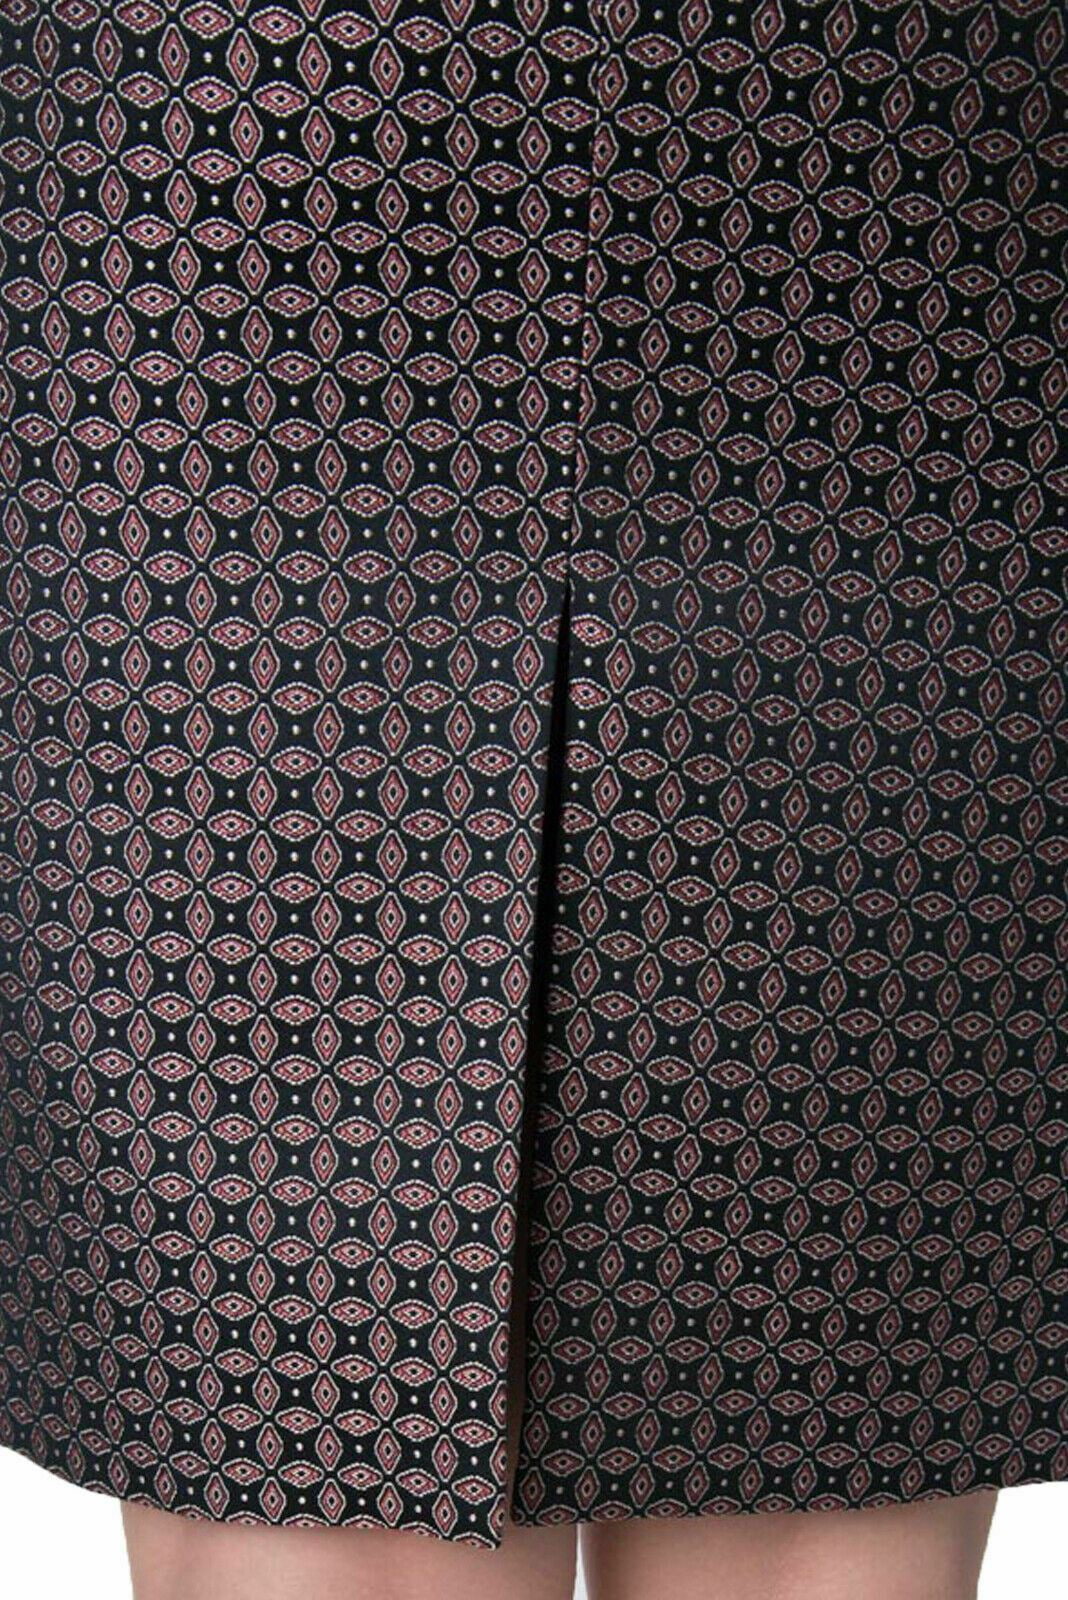 JOSEPH Cravat Jacquard Black Burgundy Pencil Skirt UK 8 BNWT RRP £170 Timeless Fashions